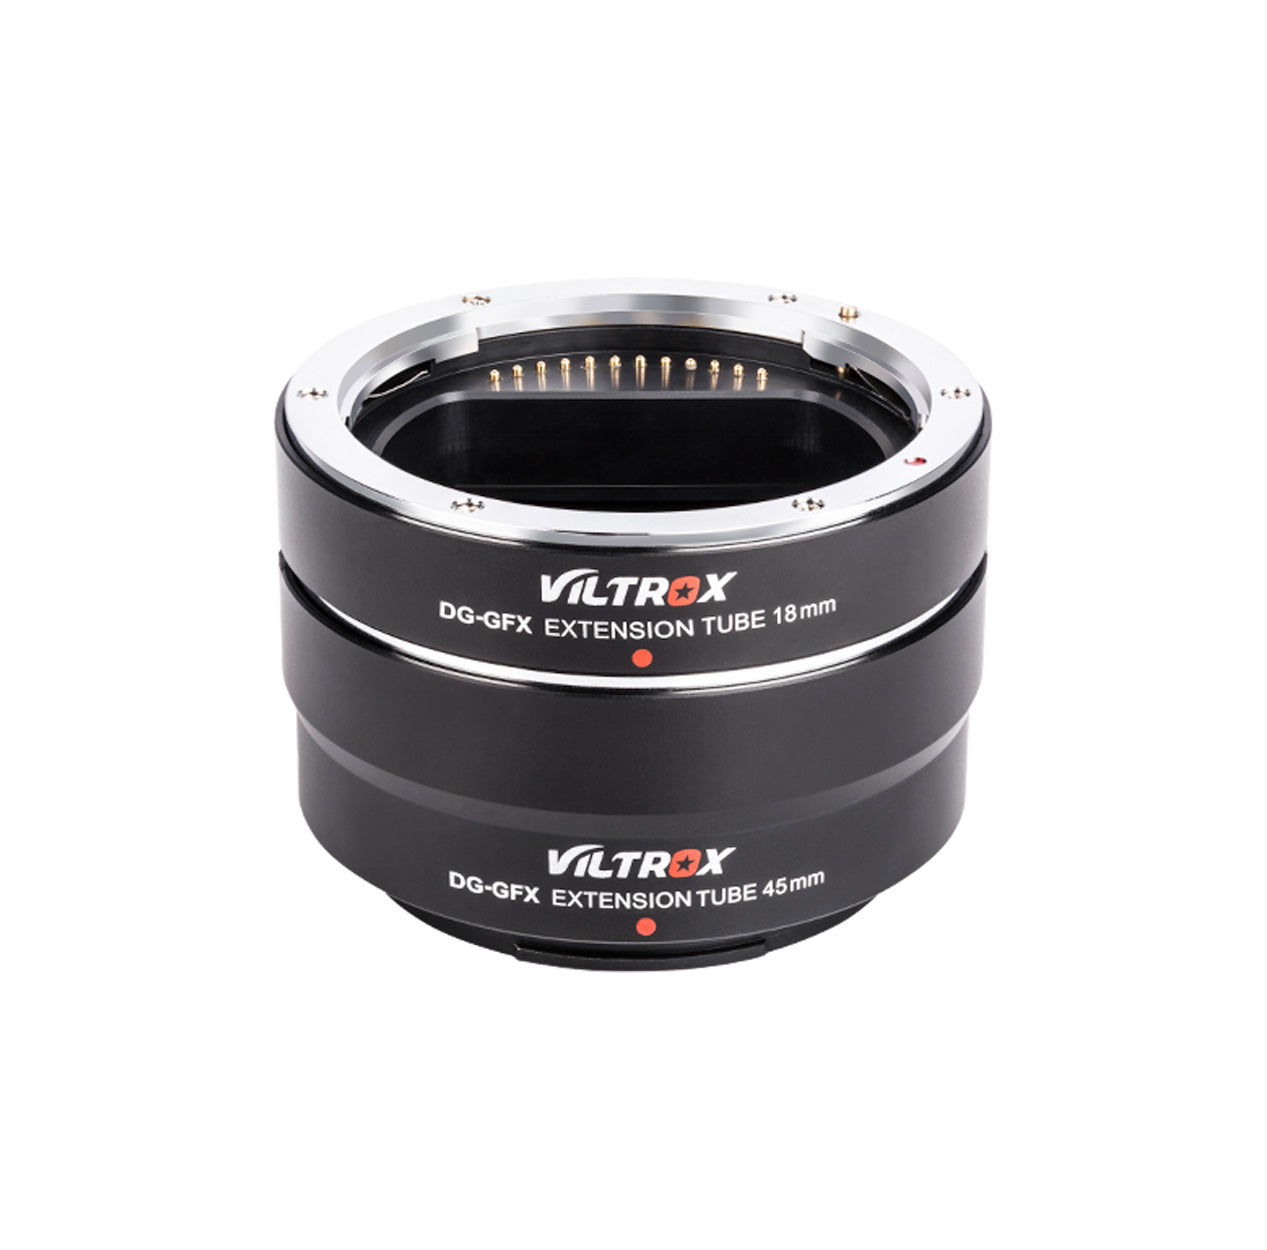 Viltrox DG-GFX 18mm Extension Tube for Fuji GFX Med-format Cameras